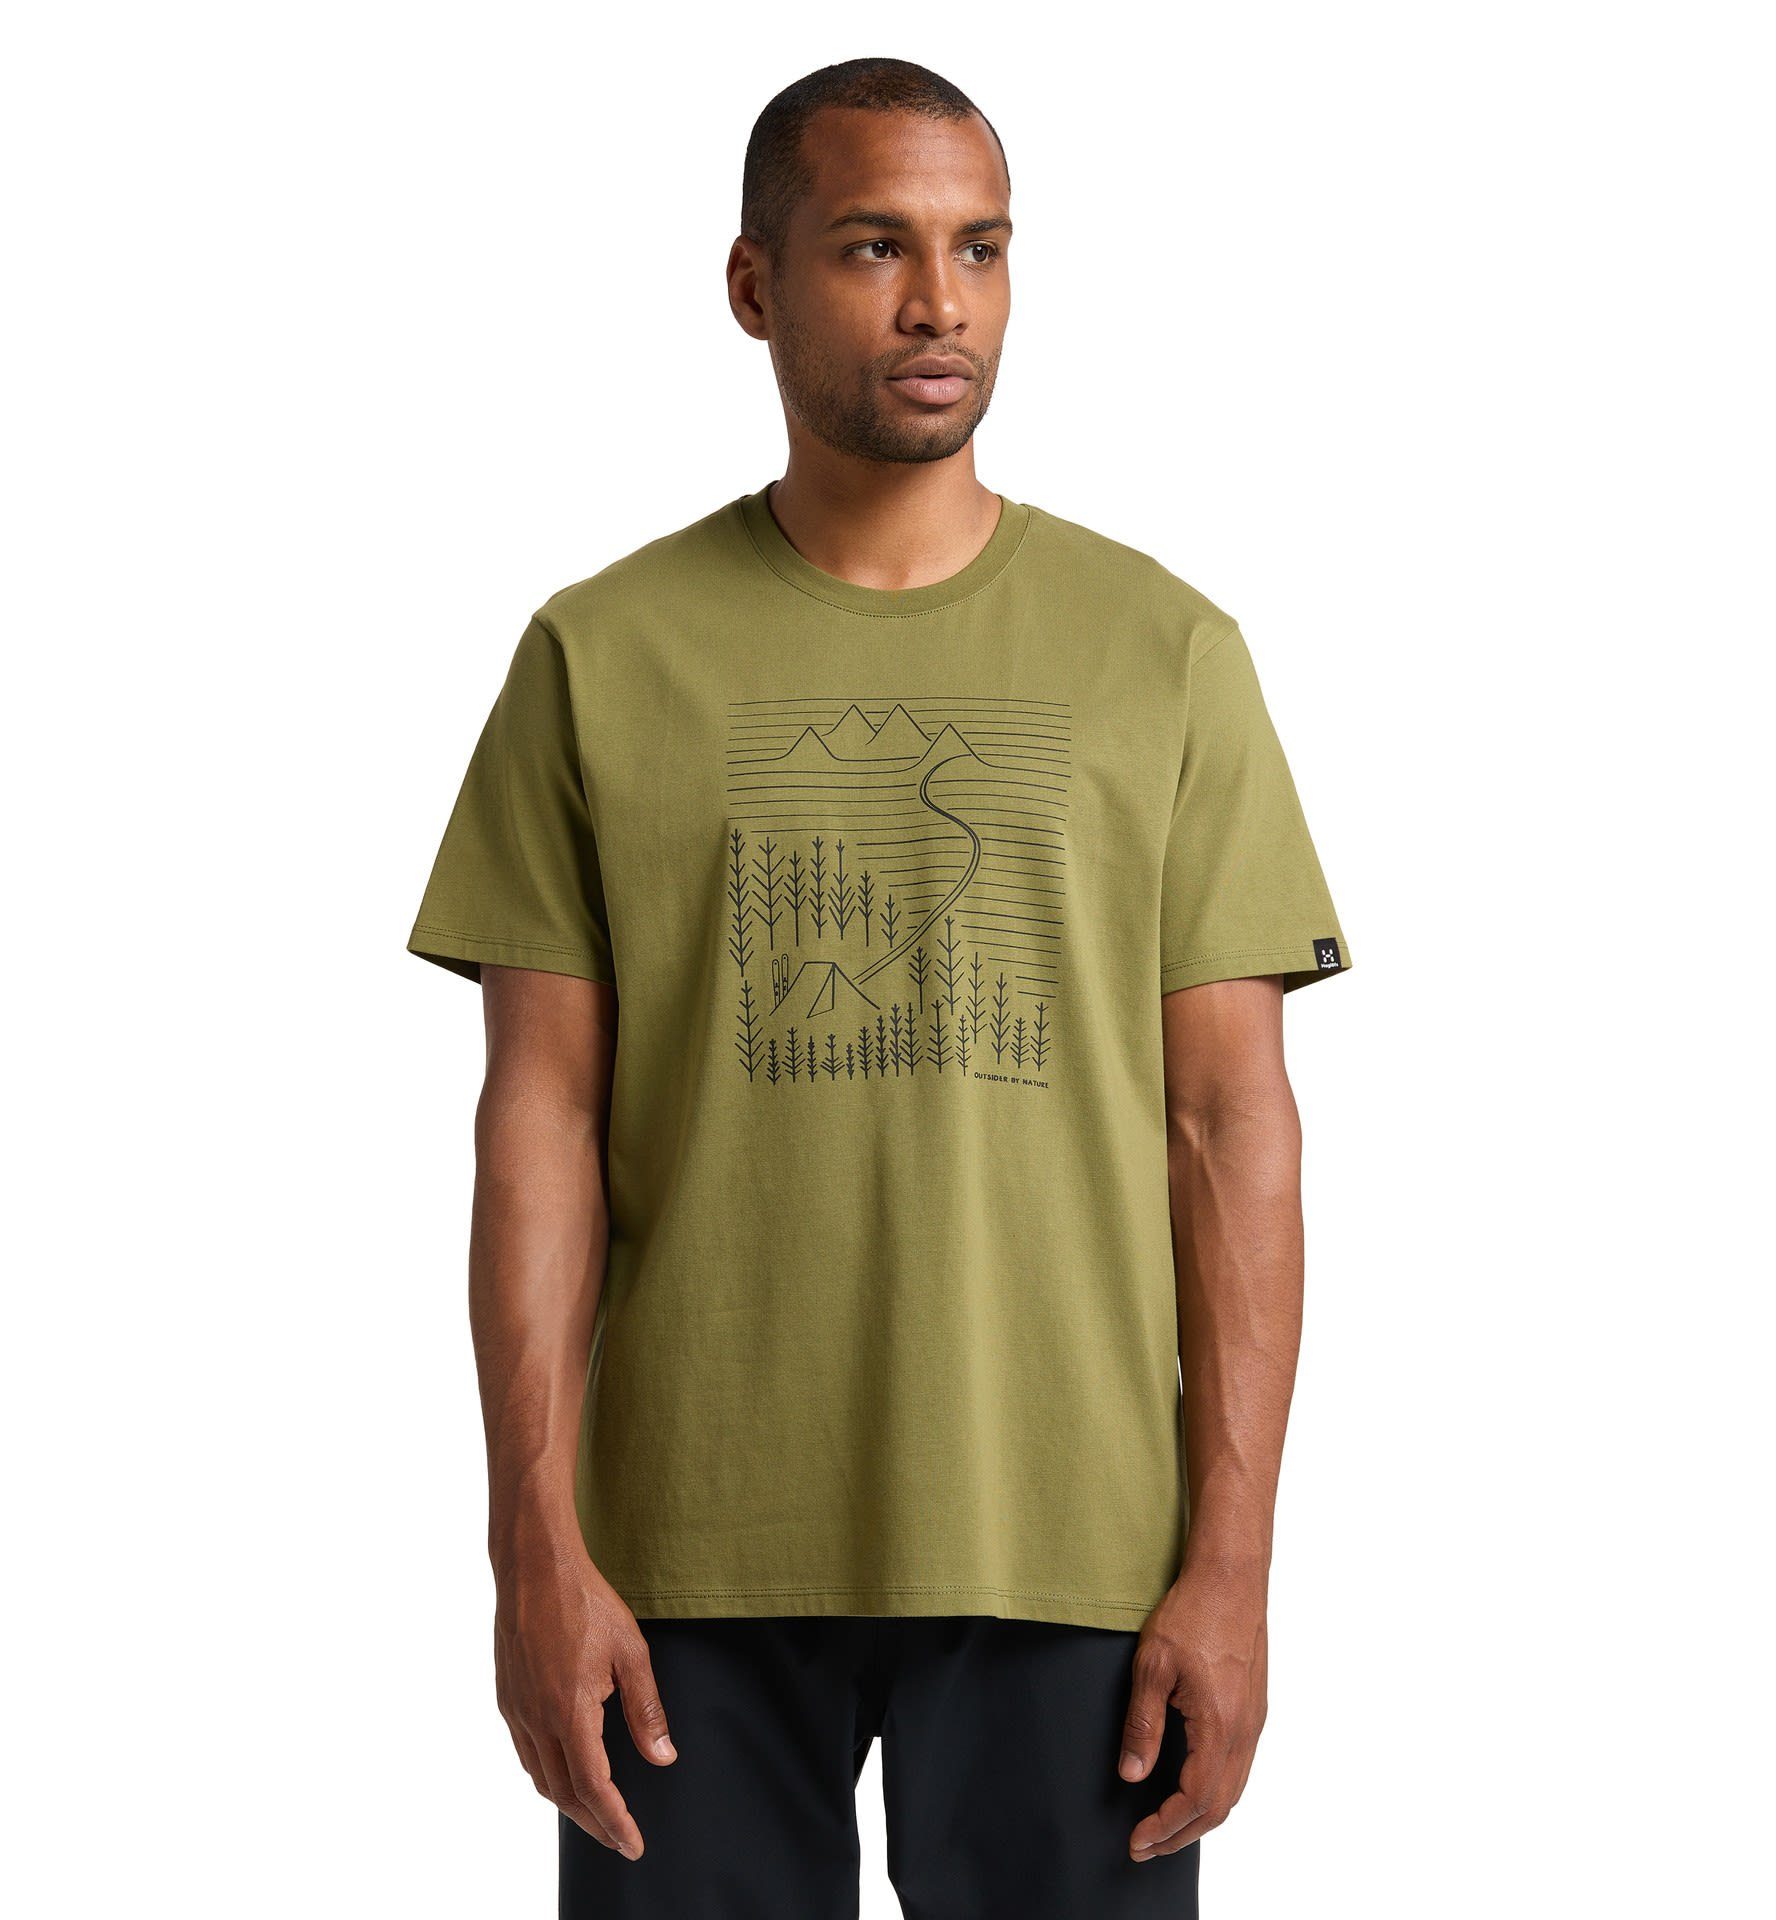 Haglöfs T-Shirt Kurzarm-Shirt Tee M Green Camp Green Haglöfs Herren